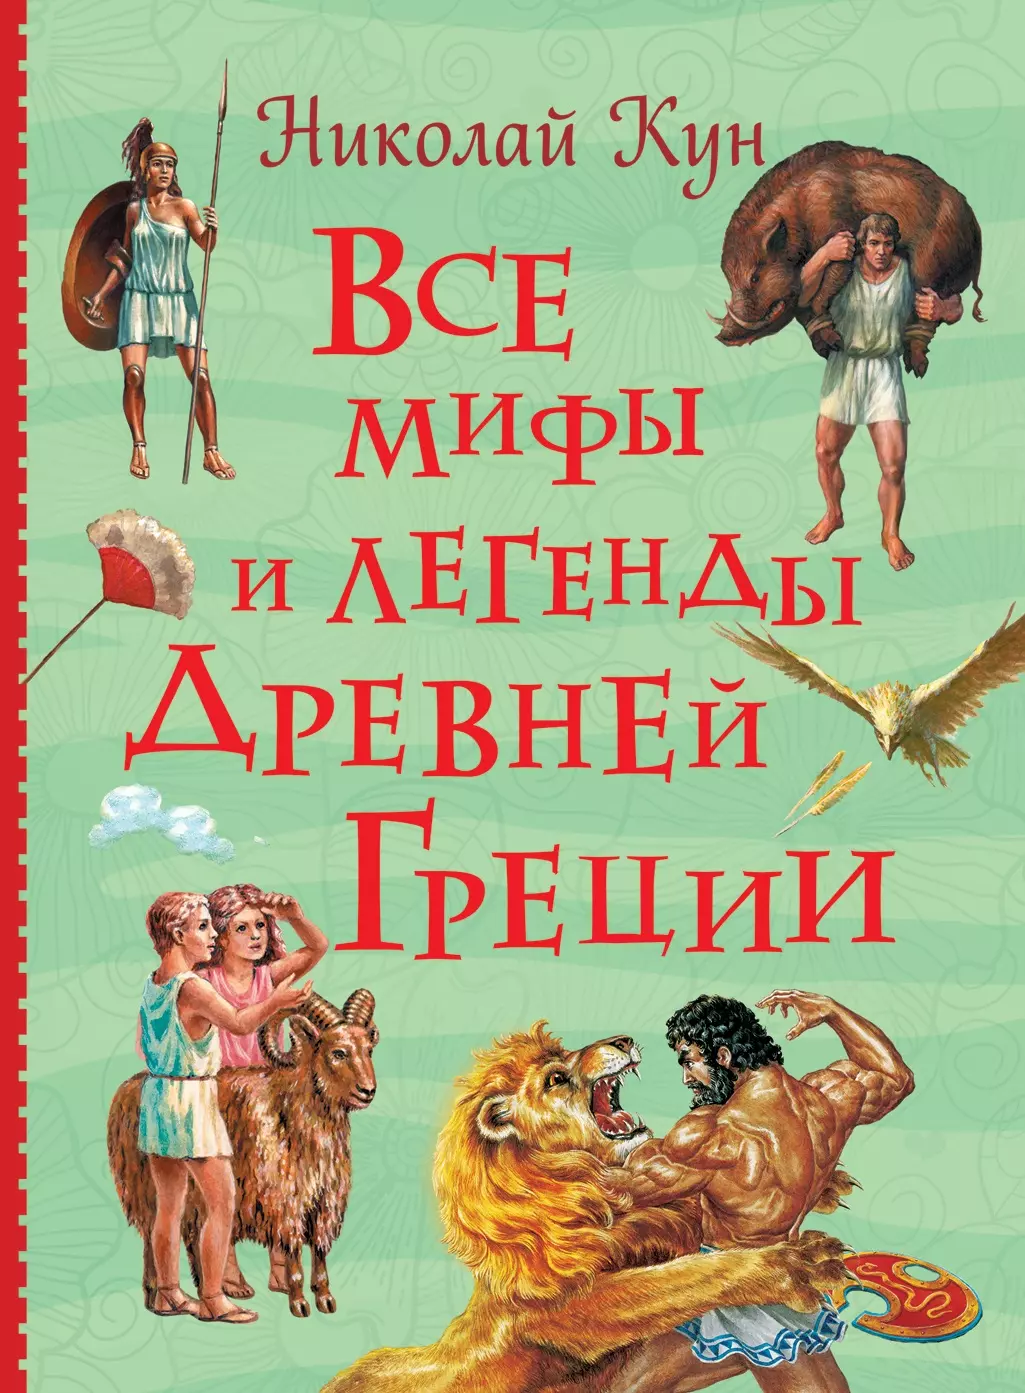 Кун Николай Альбертович - Все мифы и легенды древней Греции